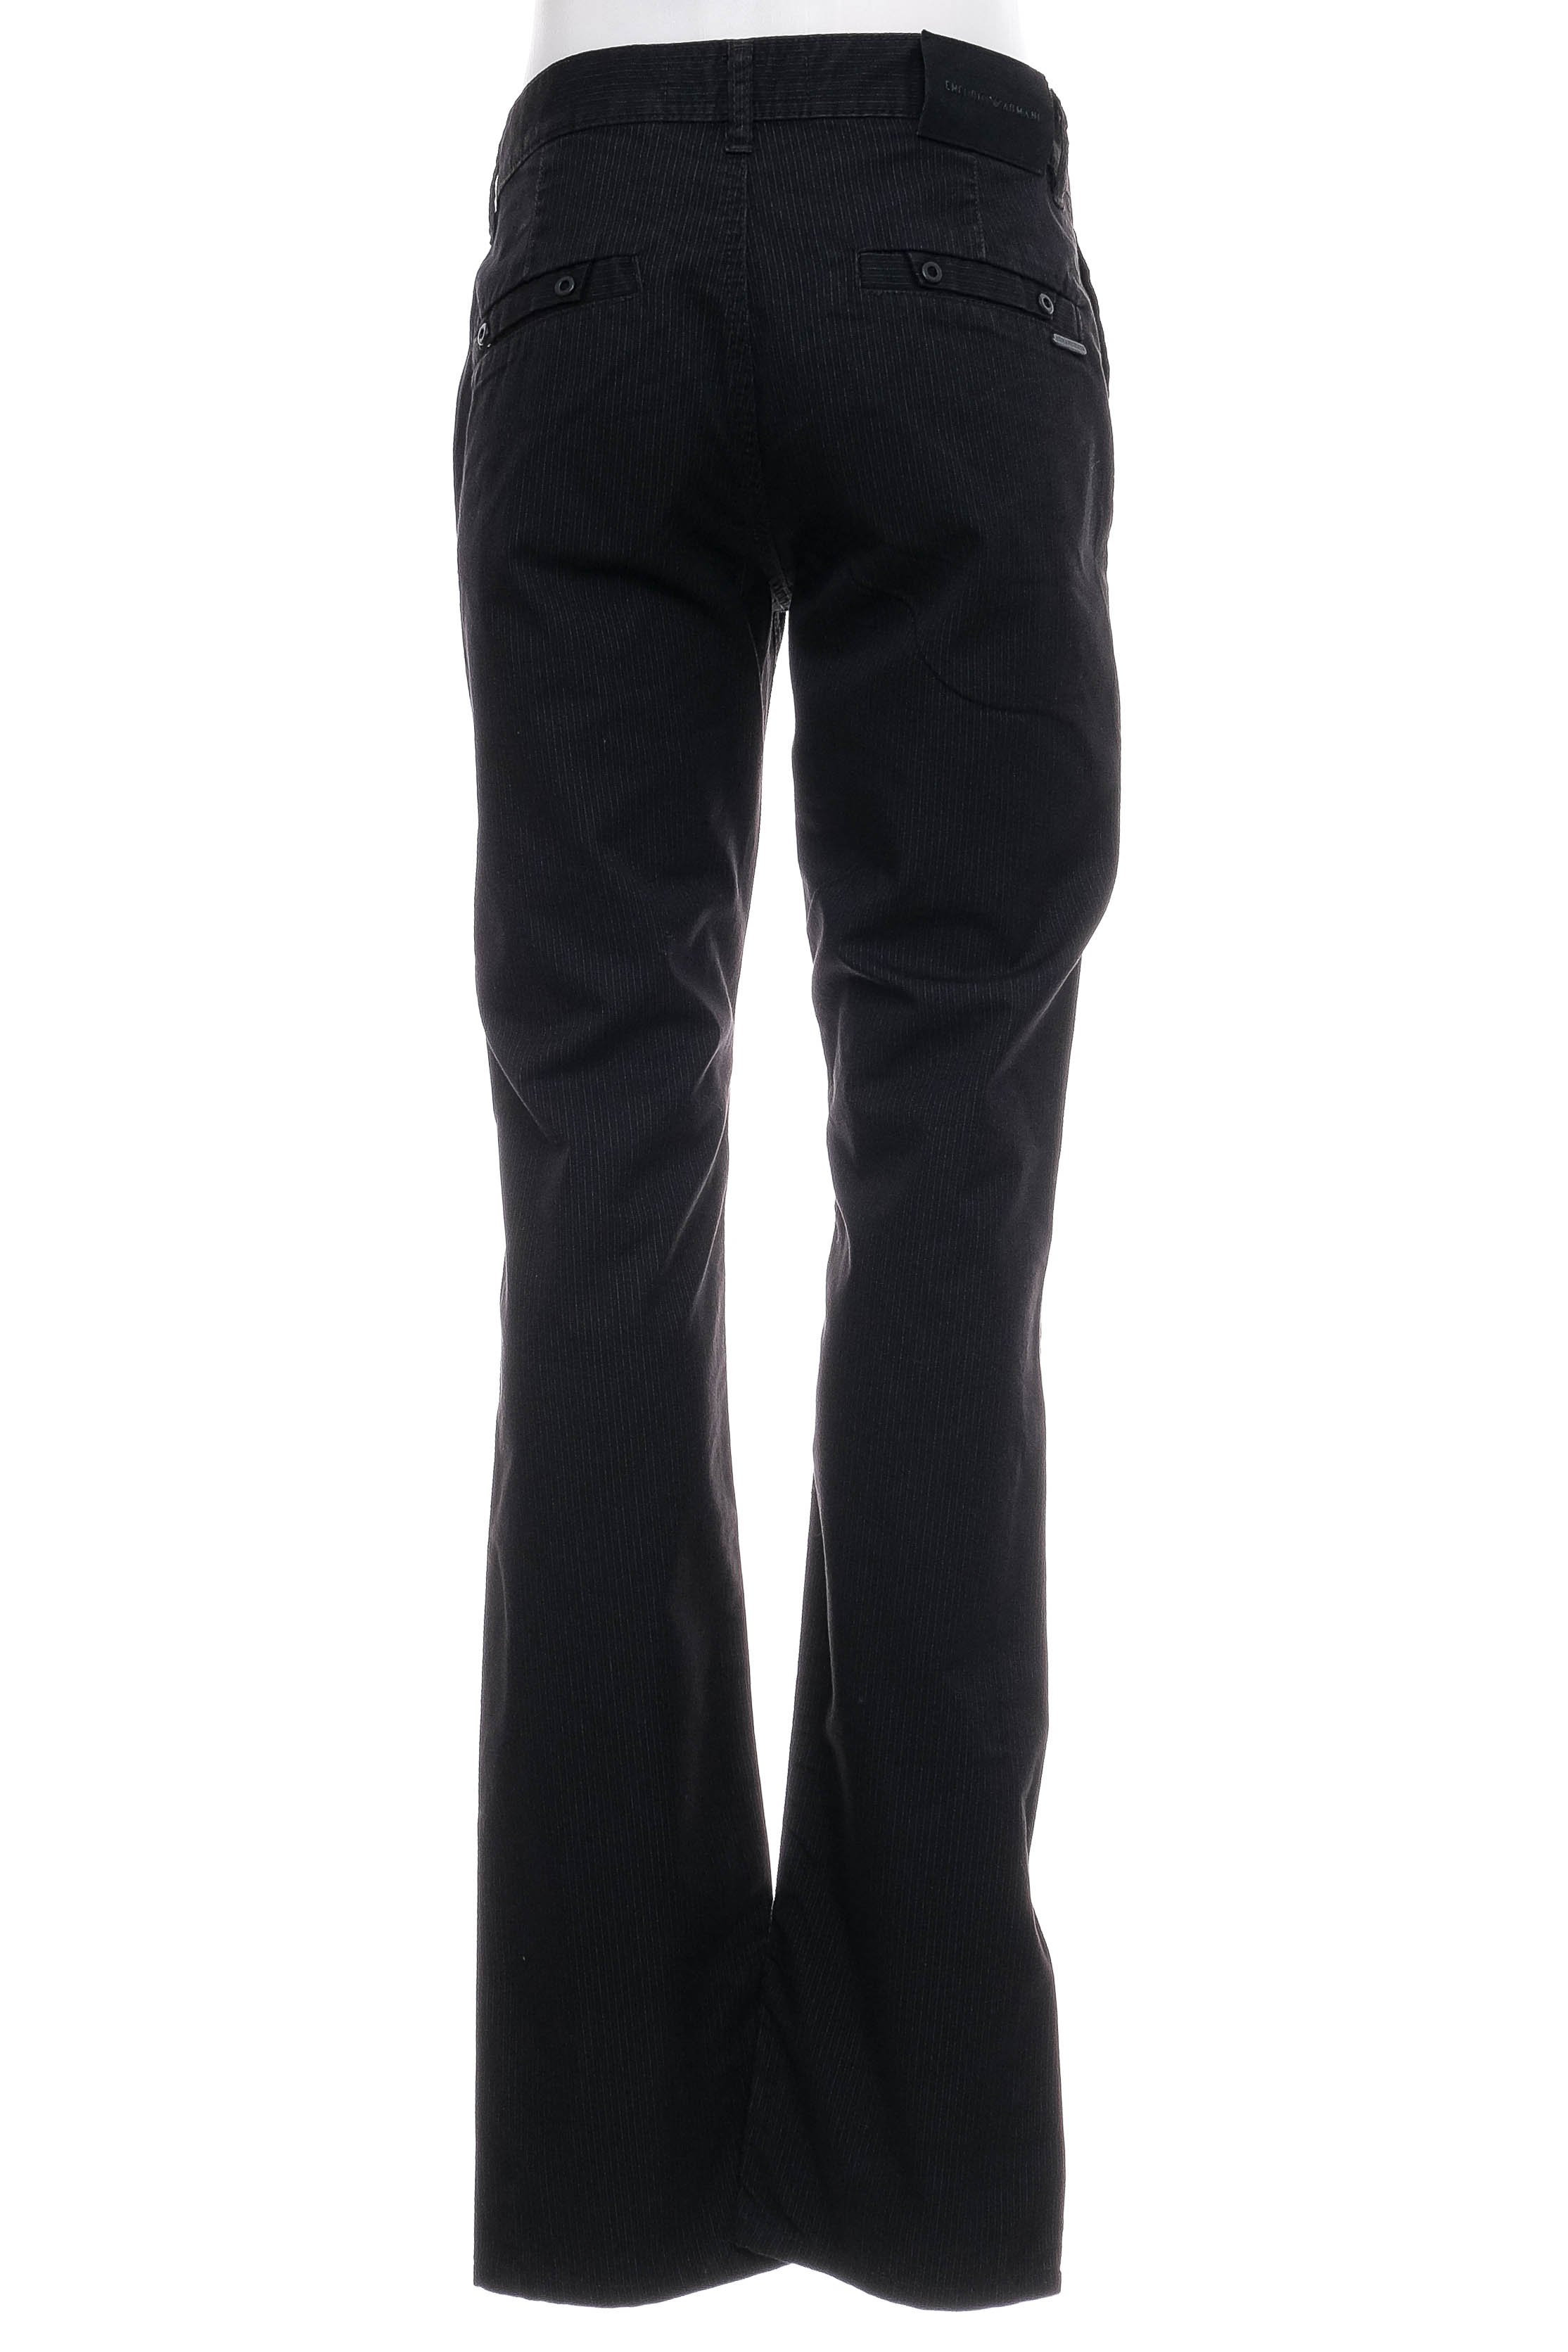 Мъжки панталон - Armani Jeans - 1